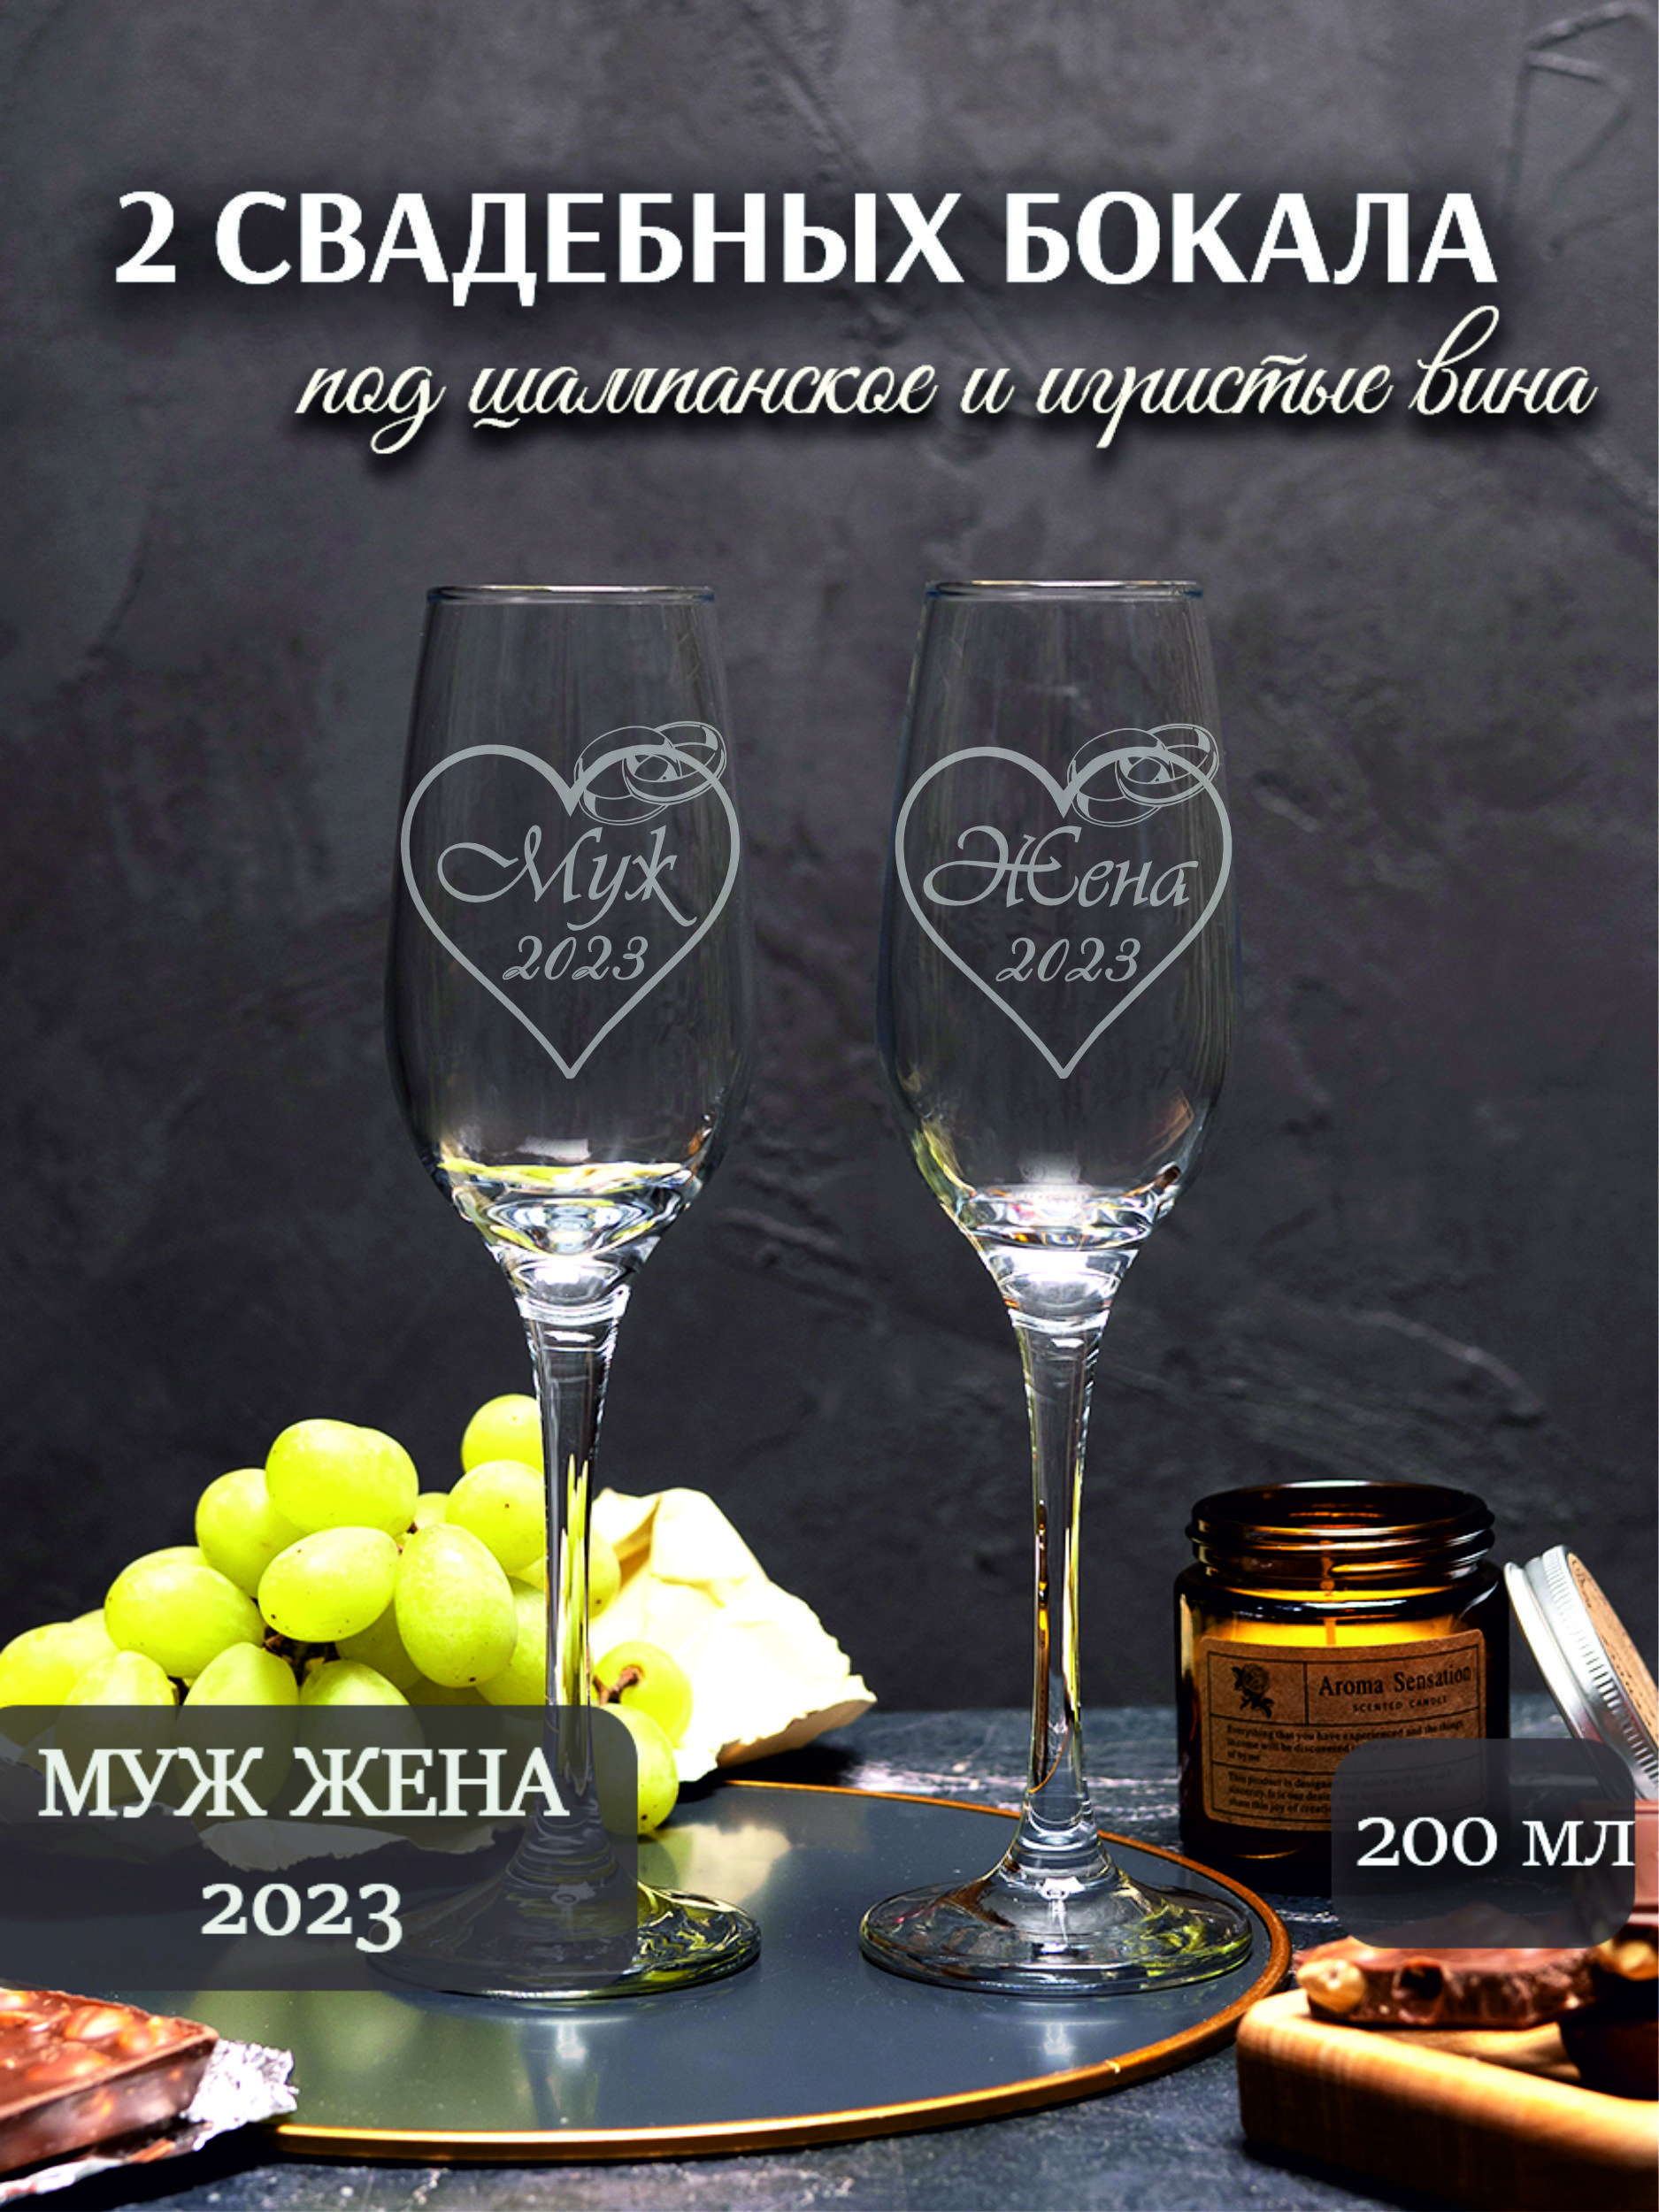 Какие бокалы покупают на свадьбу: советы по выбору бокалов для молодоженов | kormstroytorg.ru